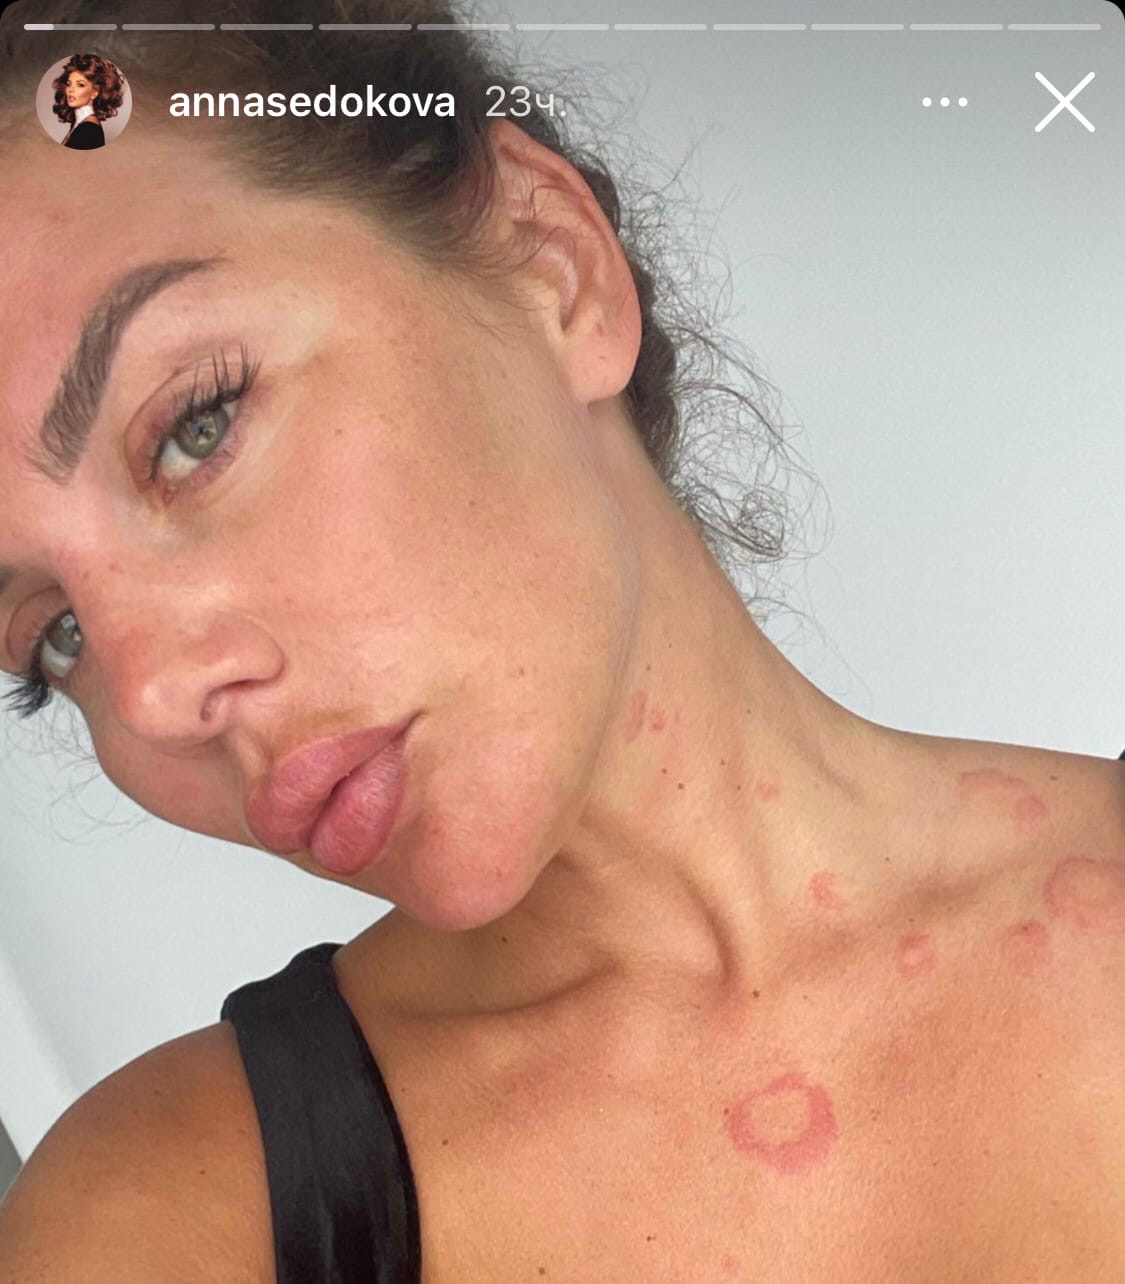 Анна Седокова чуть не задохнулась из-за отека Квинке
